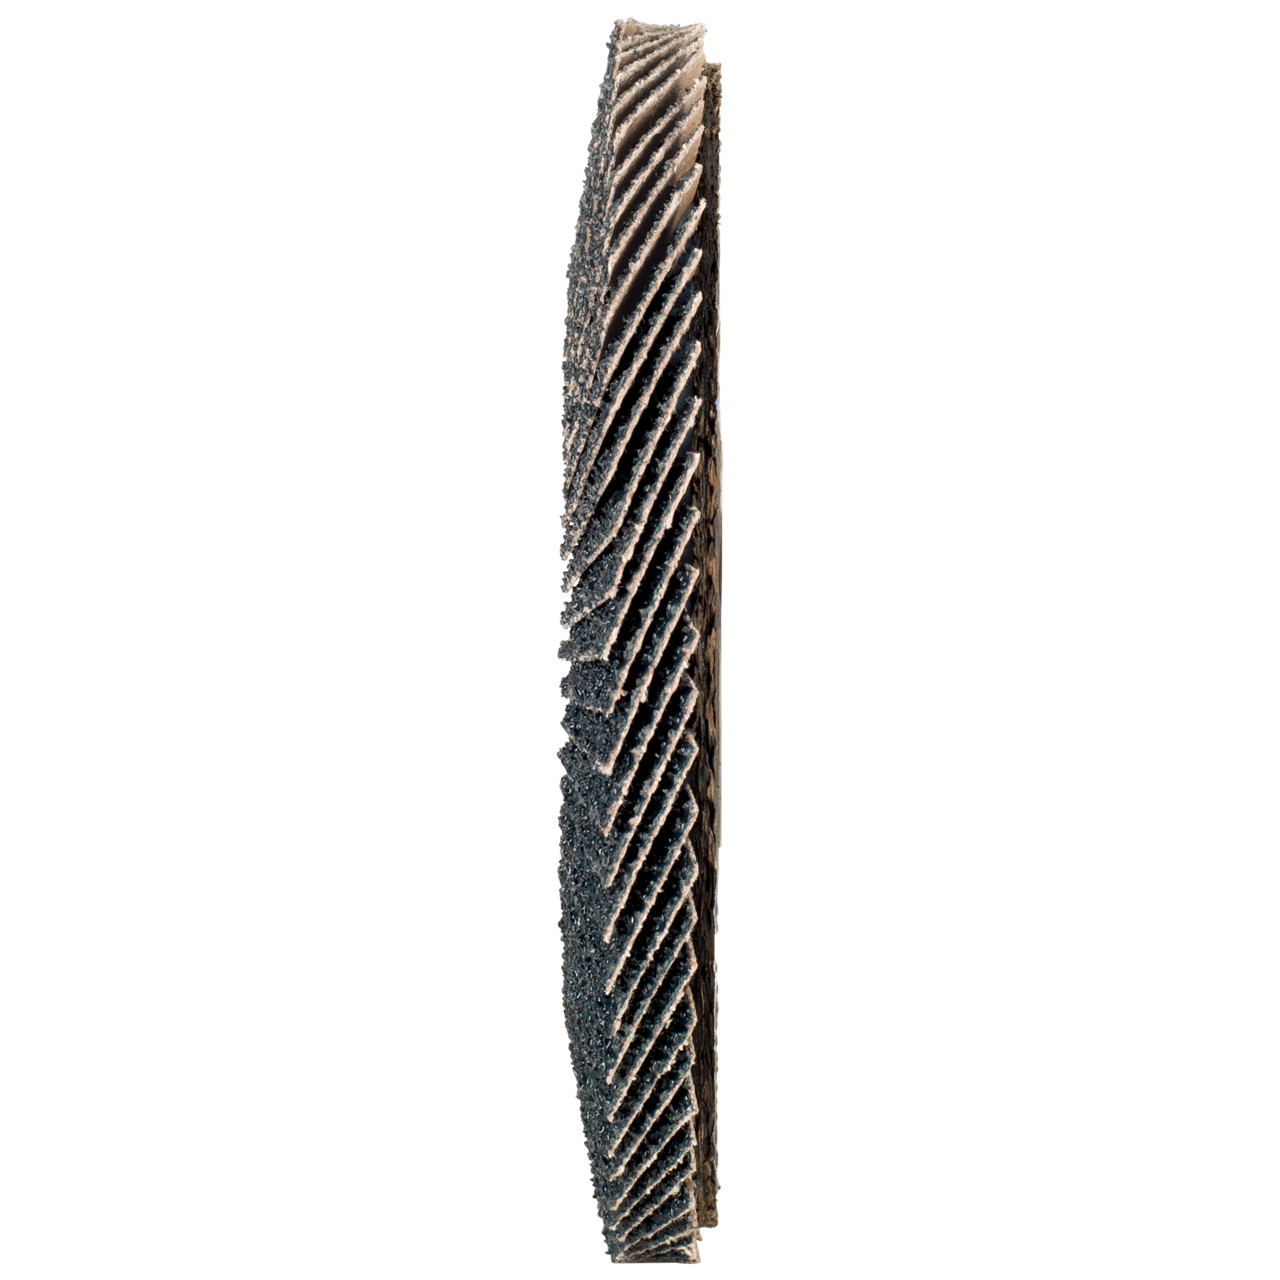 Tyrolit Arandela dentada DxH 125x22,2 2en1 para acero y acero inoxidable, P120, forma: 27A - versión desplazada (versión con cuerpo de soporte de fibra de vidrio), Art. 643805